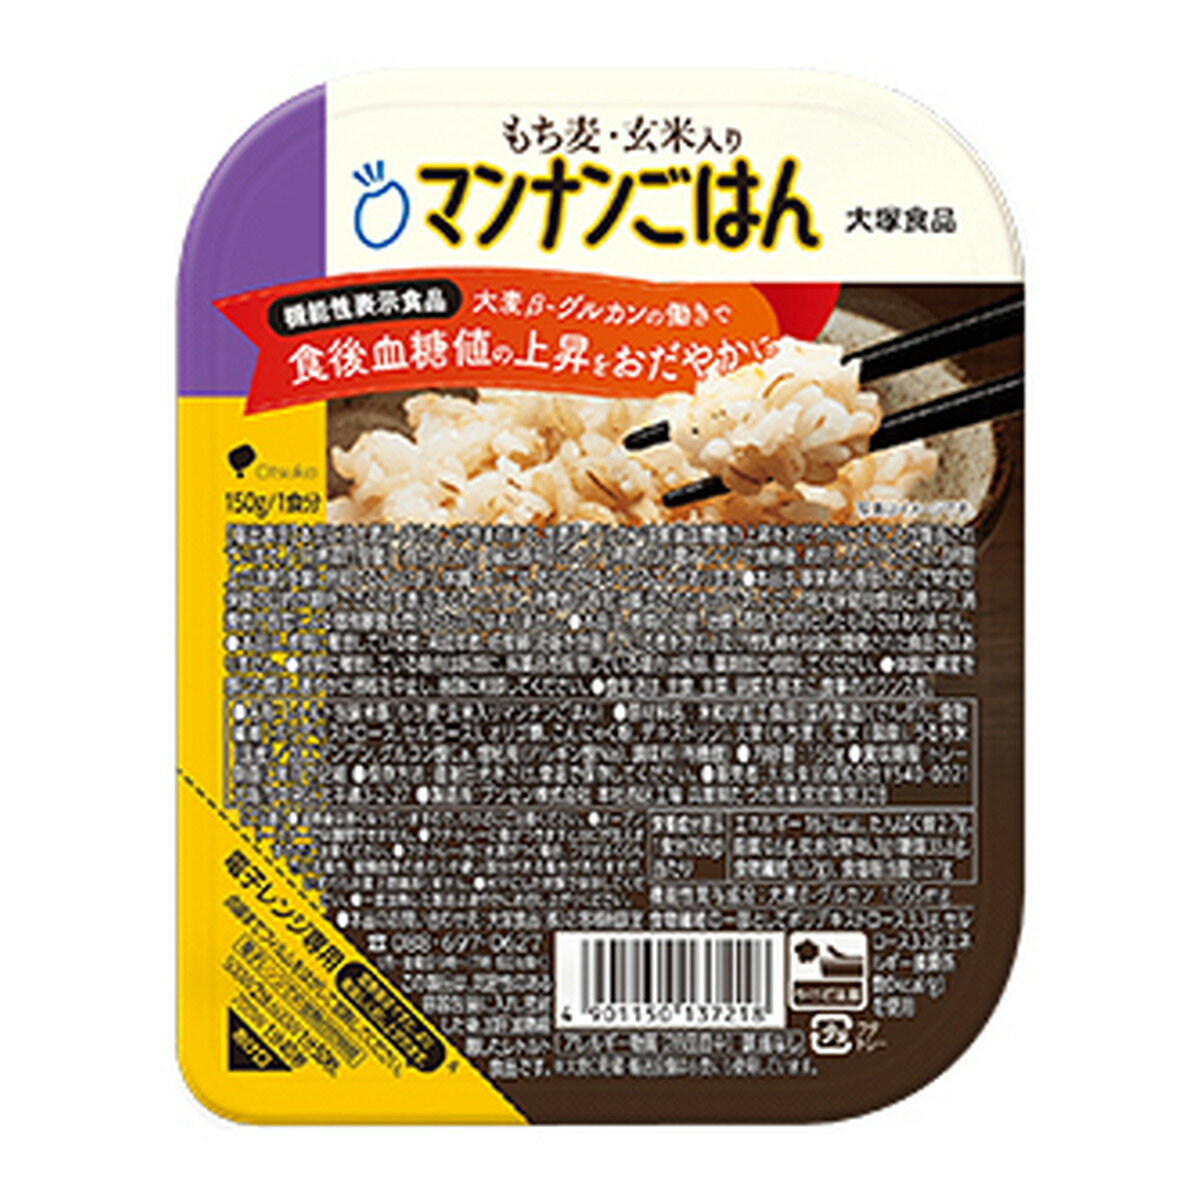 大塚食品 もち麦玄米入り マンナンごはん パックごはん レトルト包装米飯 150g入